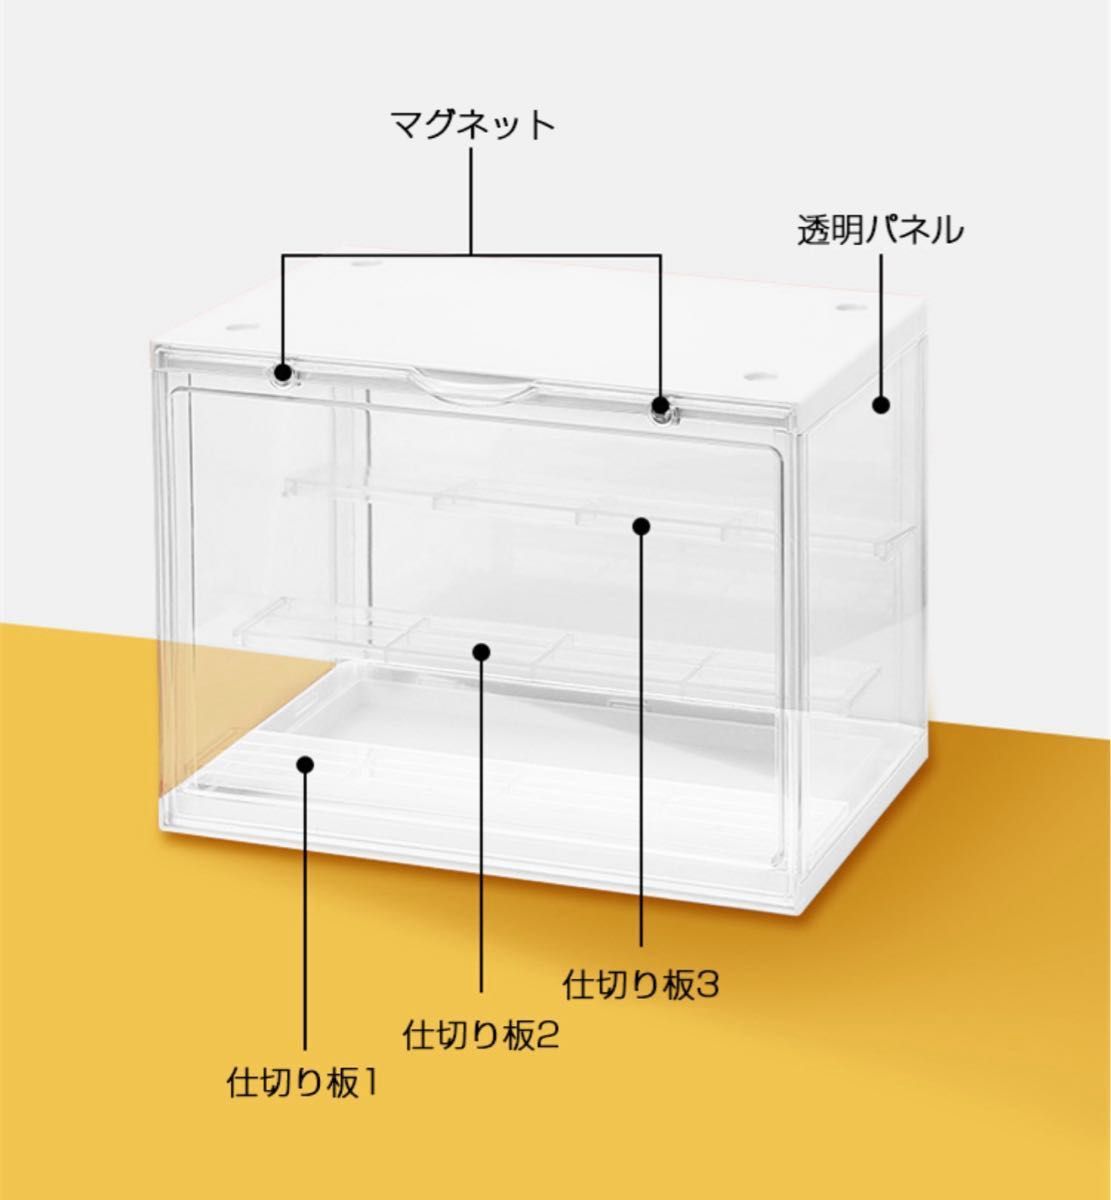 【1個】コレクションケース アクリル ディスプレイボックスケース フィギュア コレクション 透明 収納ボックス マグネット式